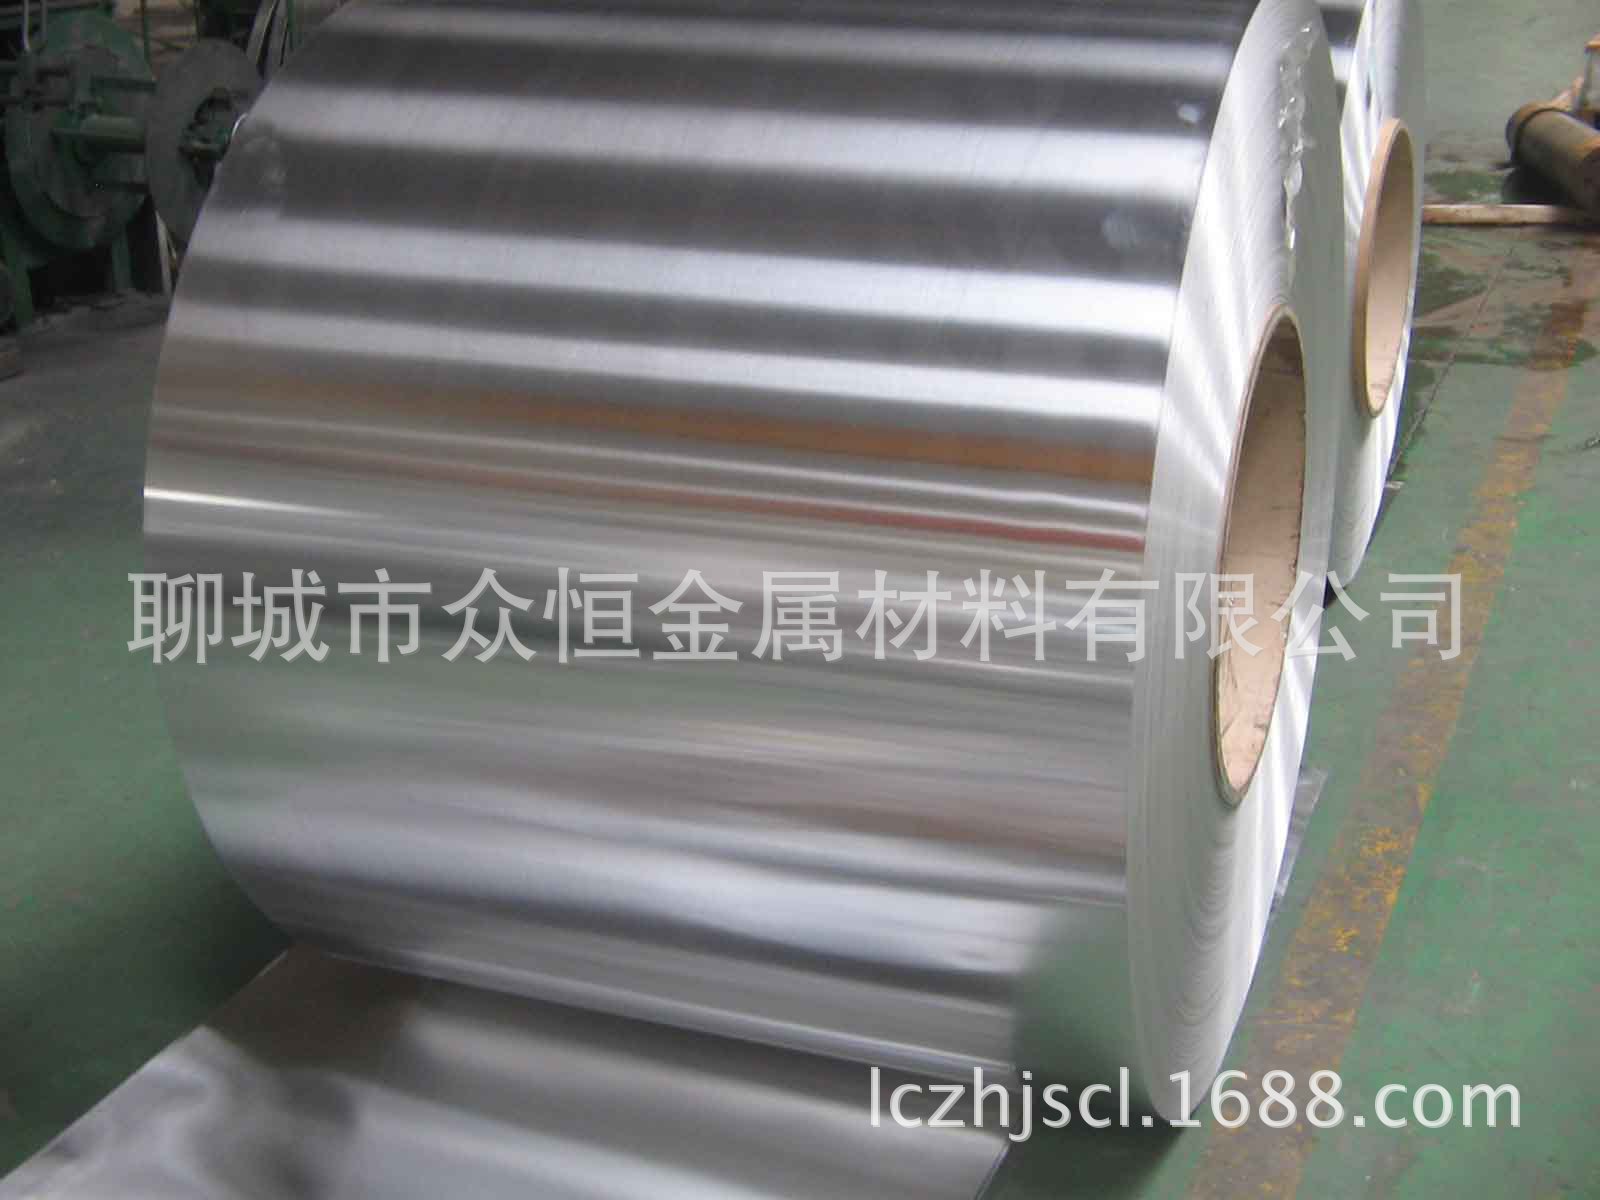 专业铝管 铝棒 铝排 铝板厂家直销批发各种铝材国标环保6063 6061示例图2